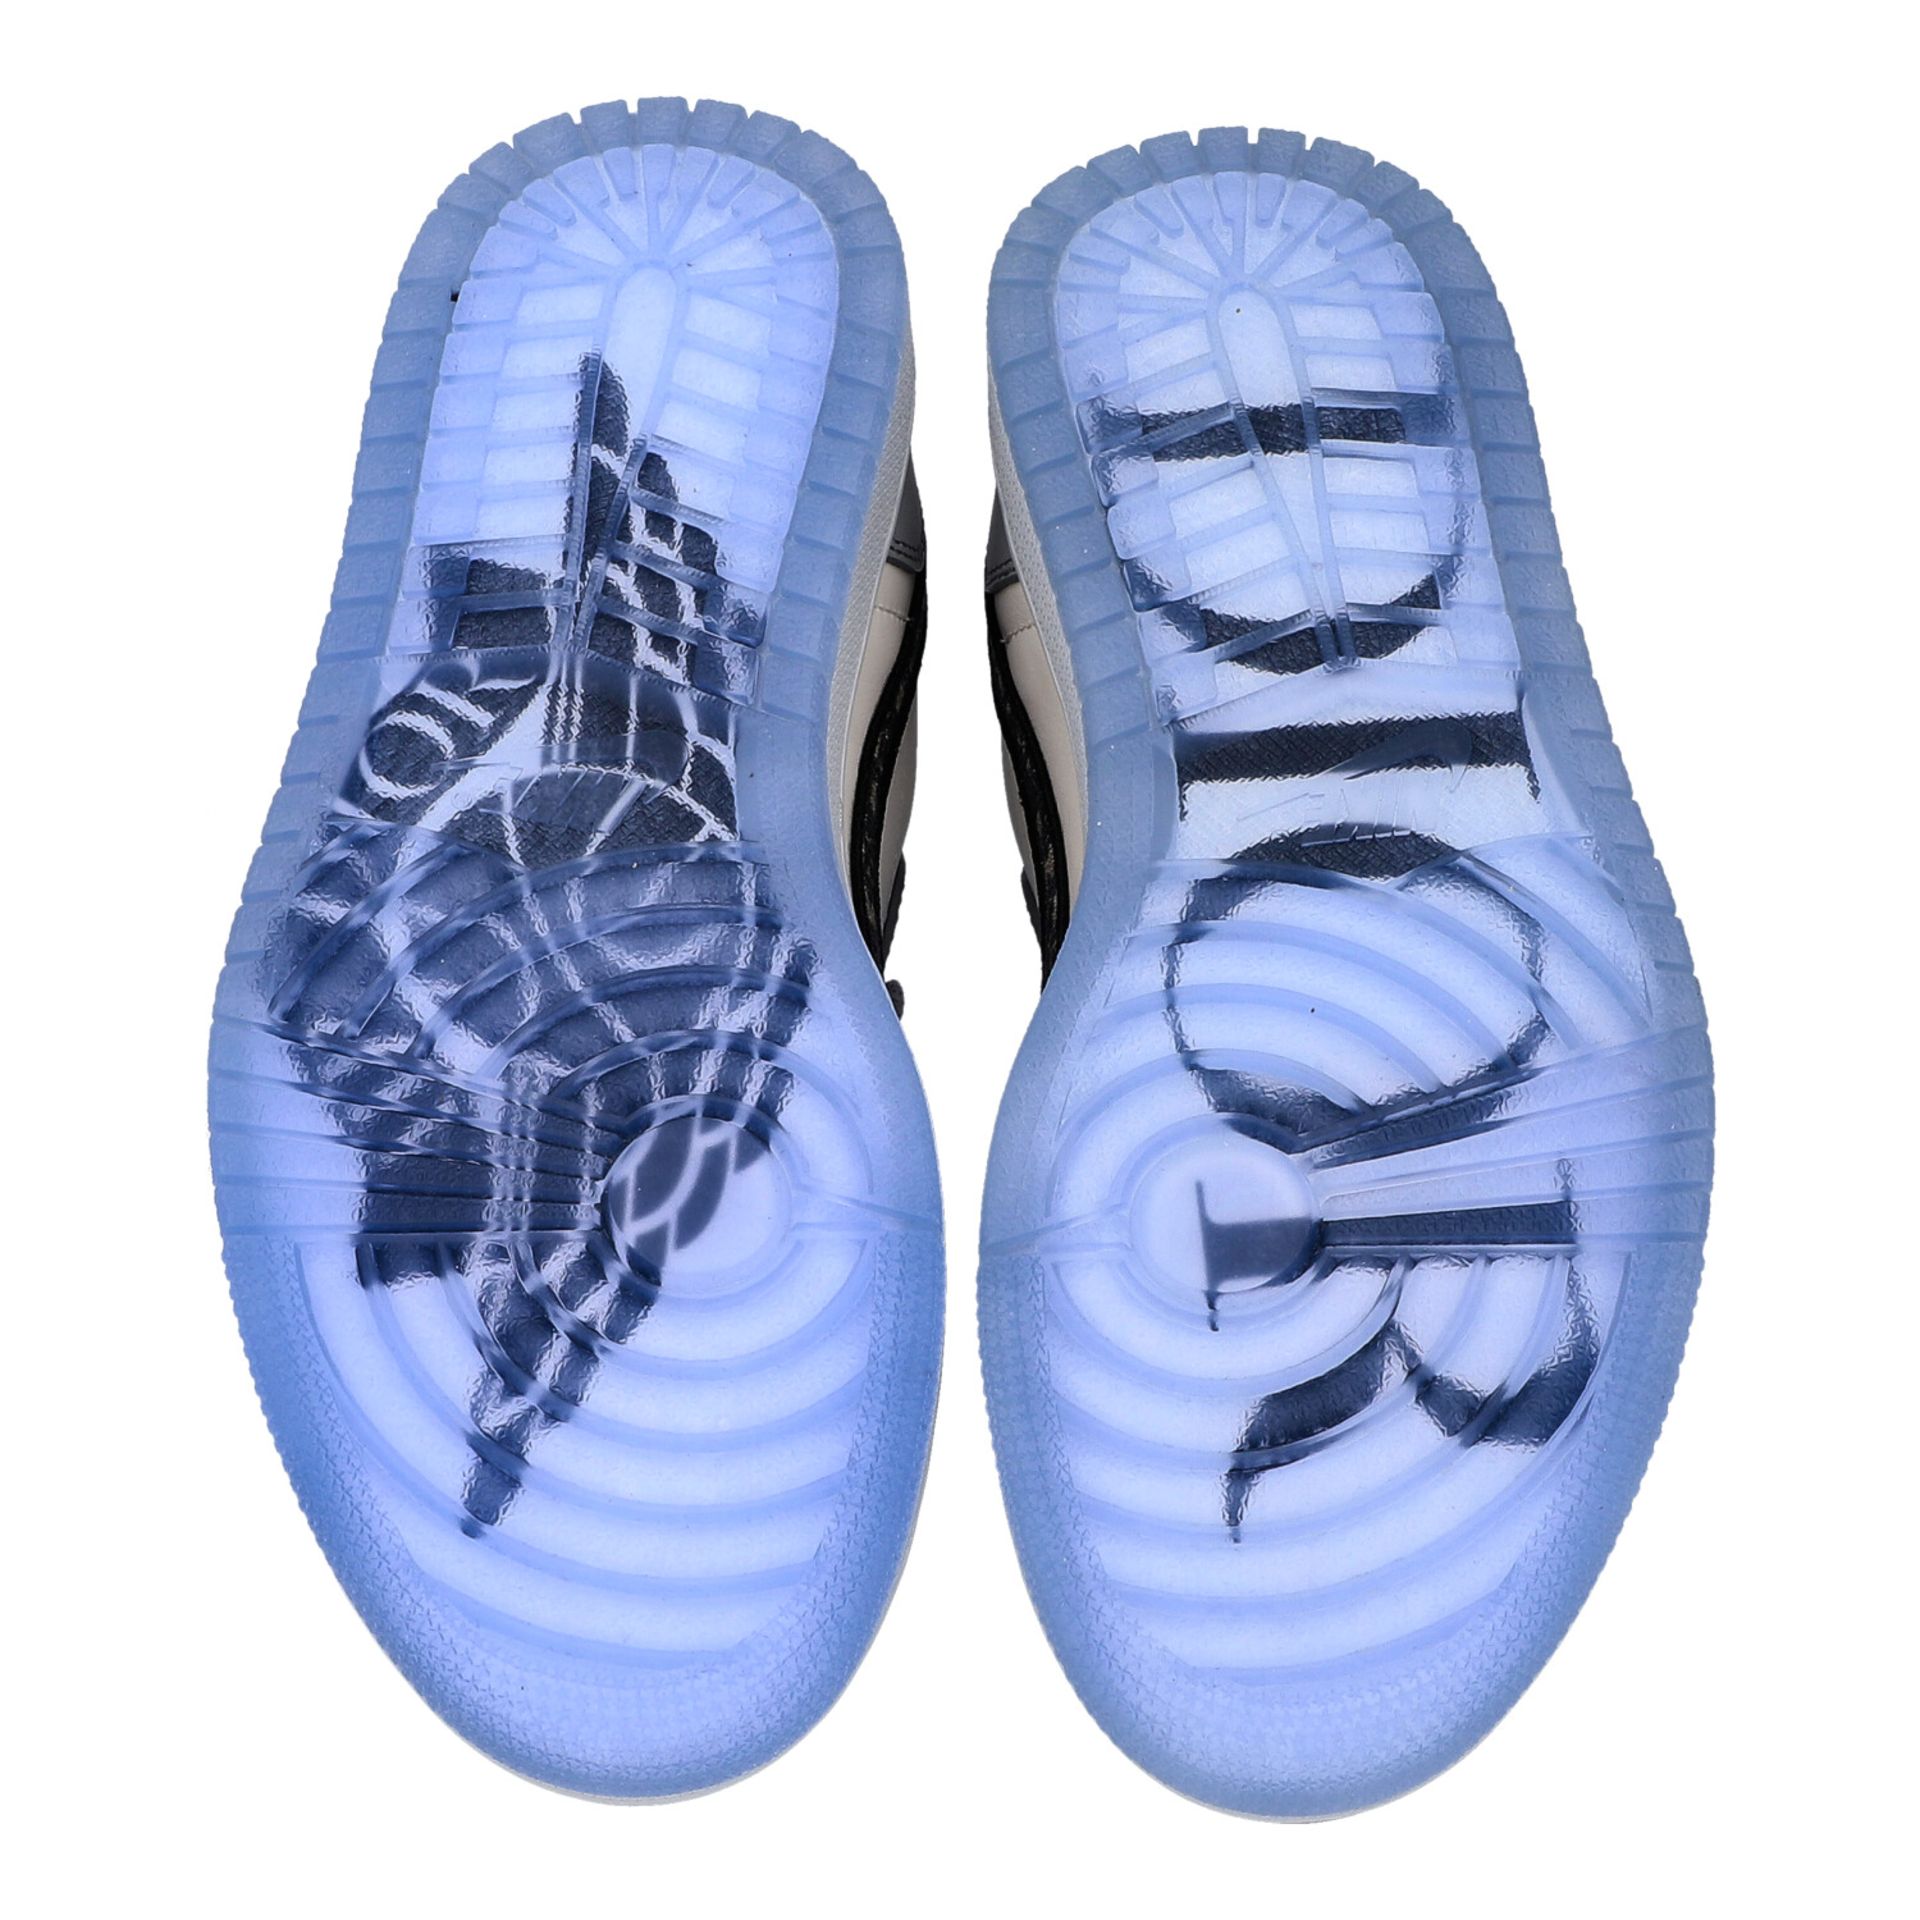 CHRISTIAN DIOR x NIKE Sneakers "AIR DIOR - LOWTOP AIR JORDAN 1 OG", Gr. 40. - Image 11 of 14